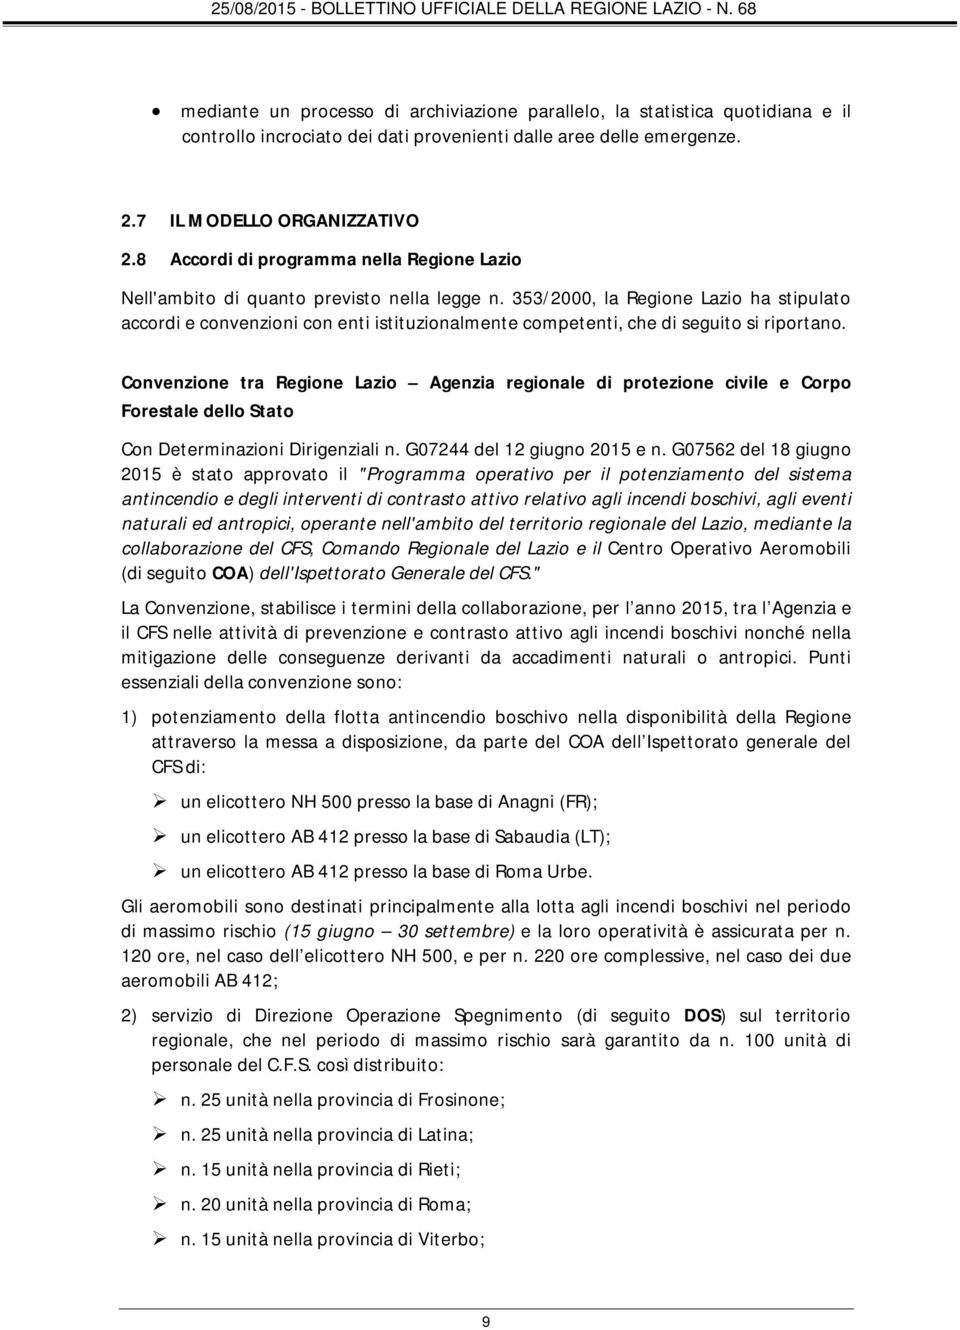 353/2000, la Regione Lazio ha stipulato accordi e convenzioni con enti istituzionalmente competenti, che di seguito si riportano.